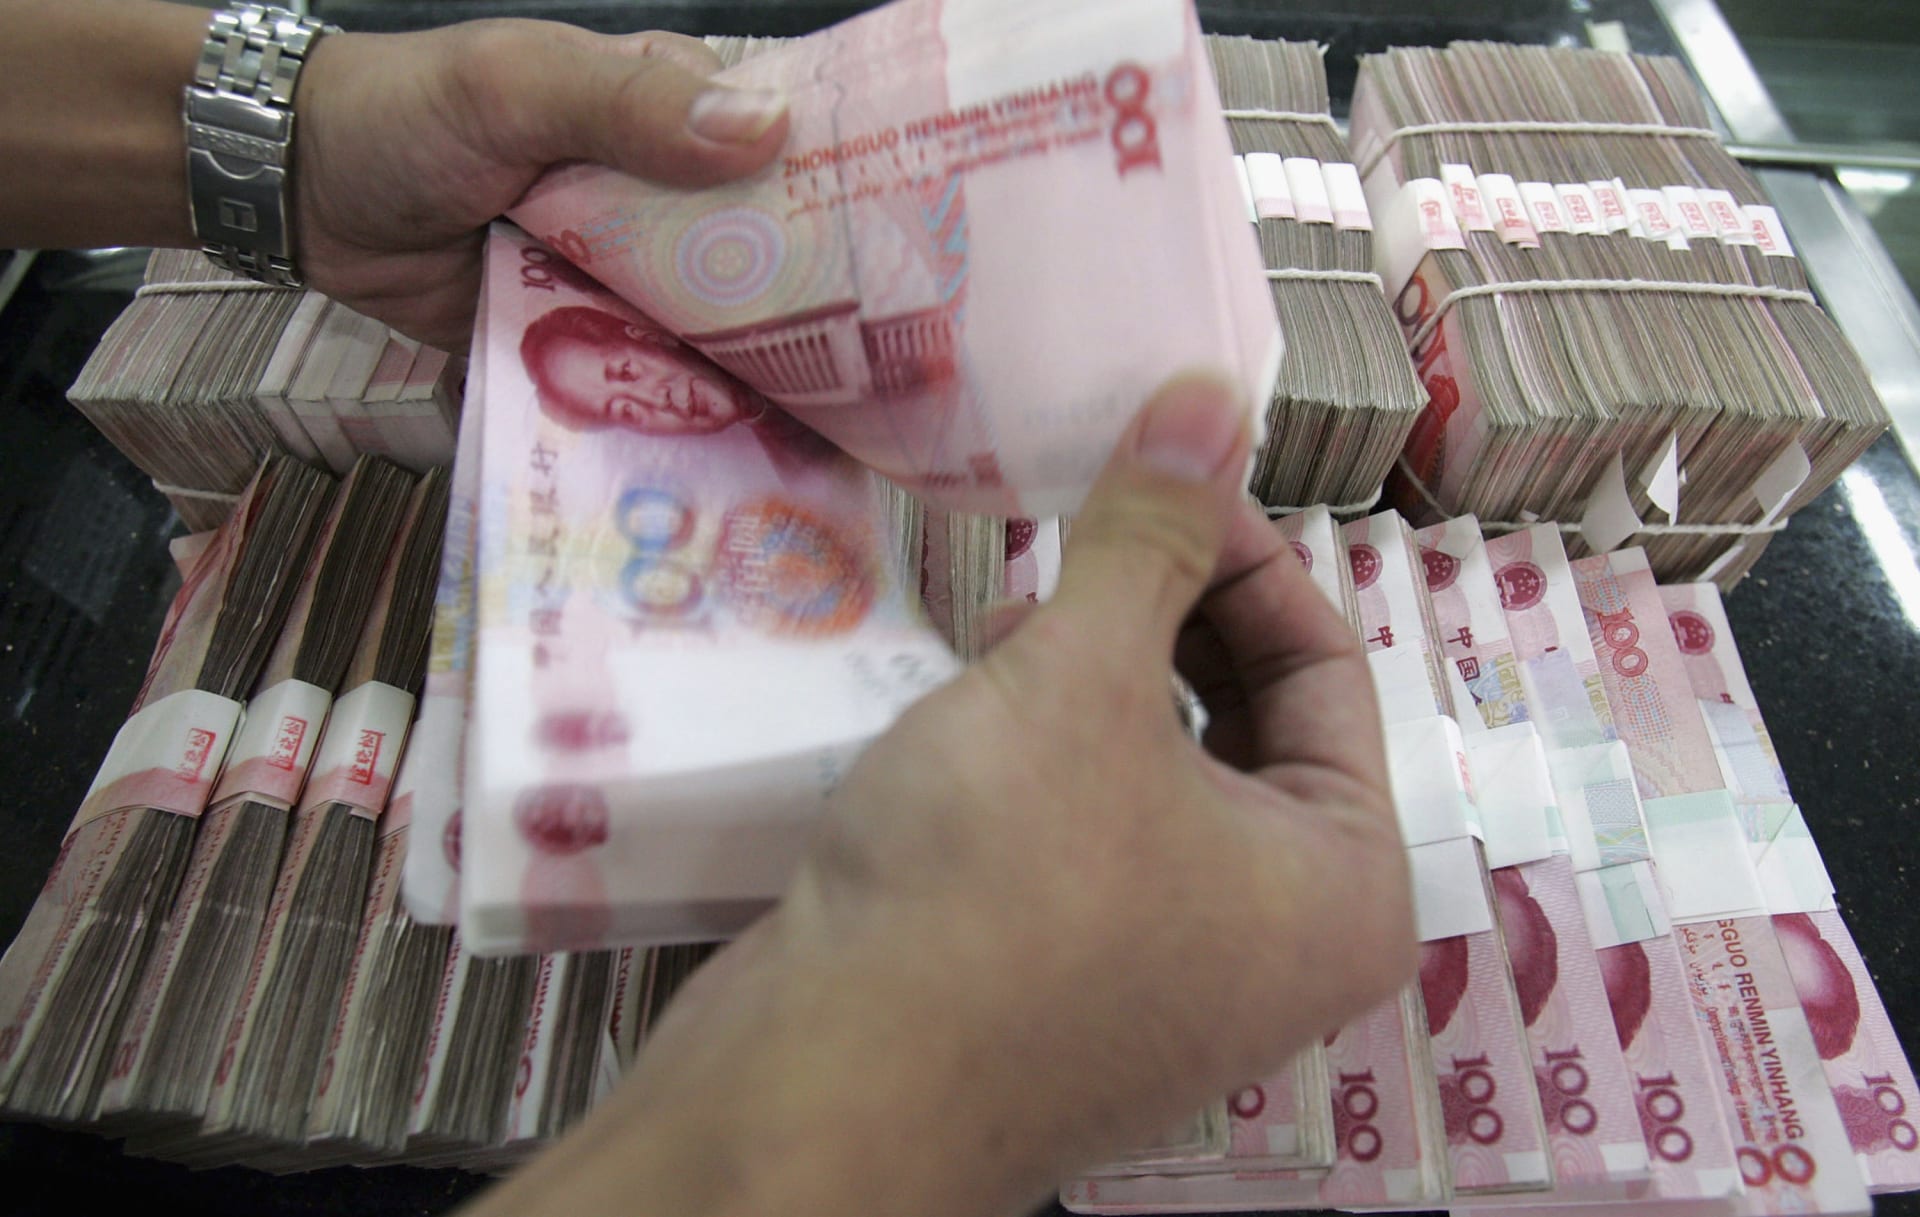 شخص يعد مجموعة من أوراق نقد اليوان الصيني في أحد بنوك بكين (صورة أرشيفية)